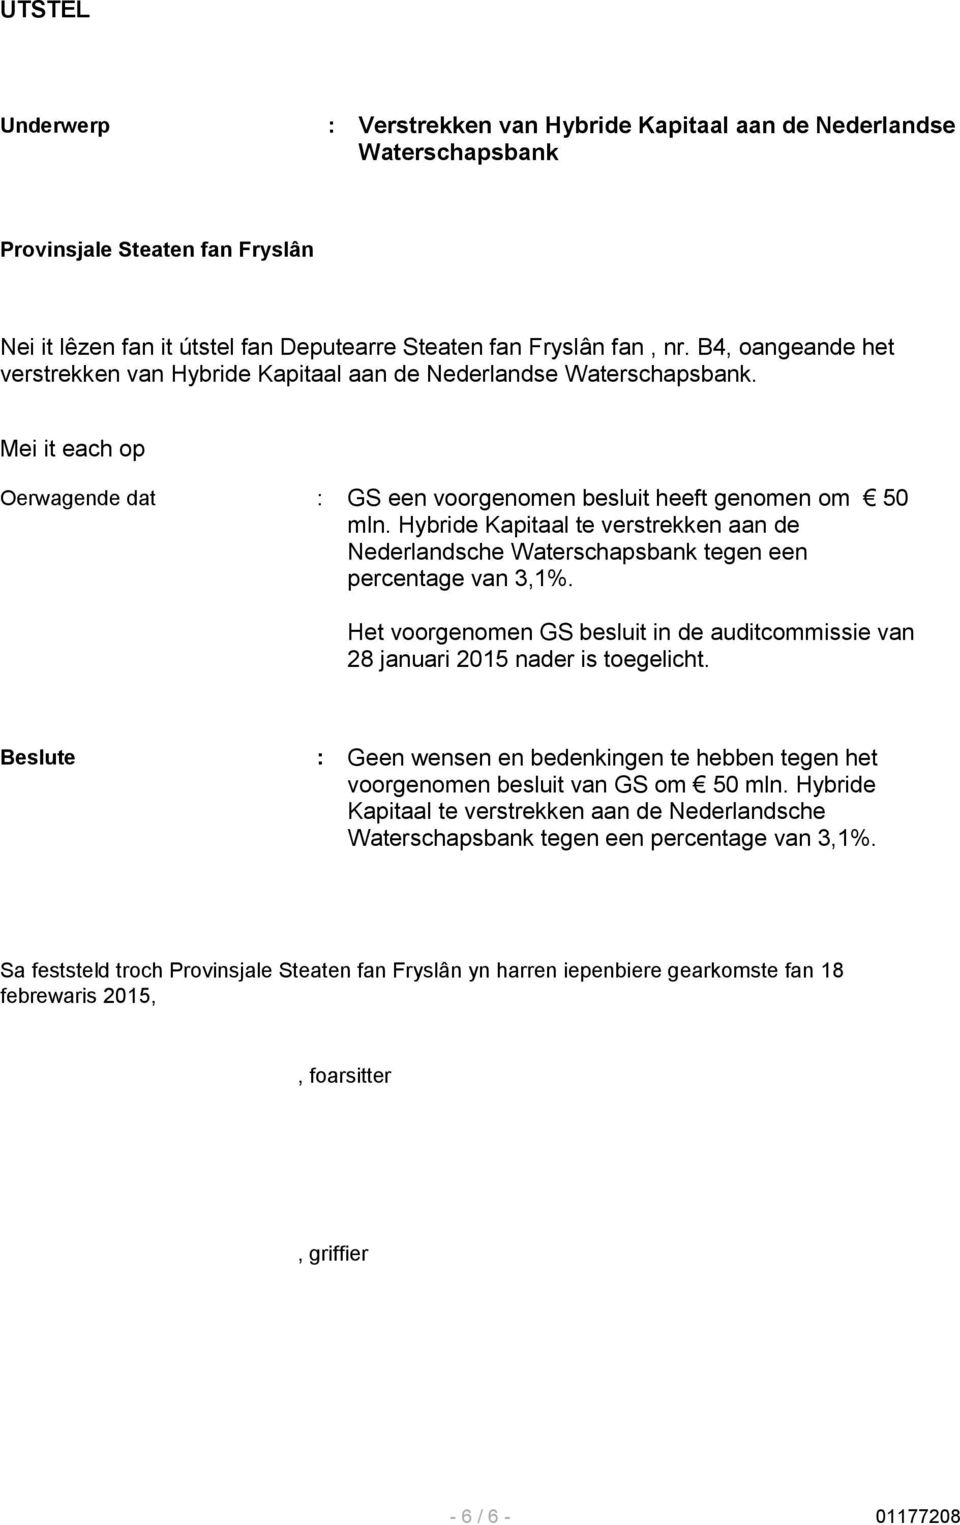 Hybride Kapitaal te verstrekken aan de Nederlandsche Waterschapsbank tegen een percentage van 3,1%. Het voorgenomen GS besluit in de auditcommissie van 28 januari 2015 nader is toegelicht.